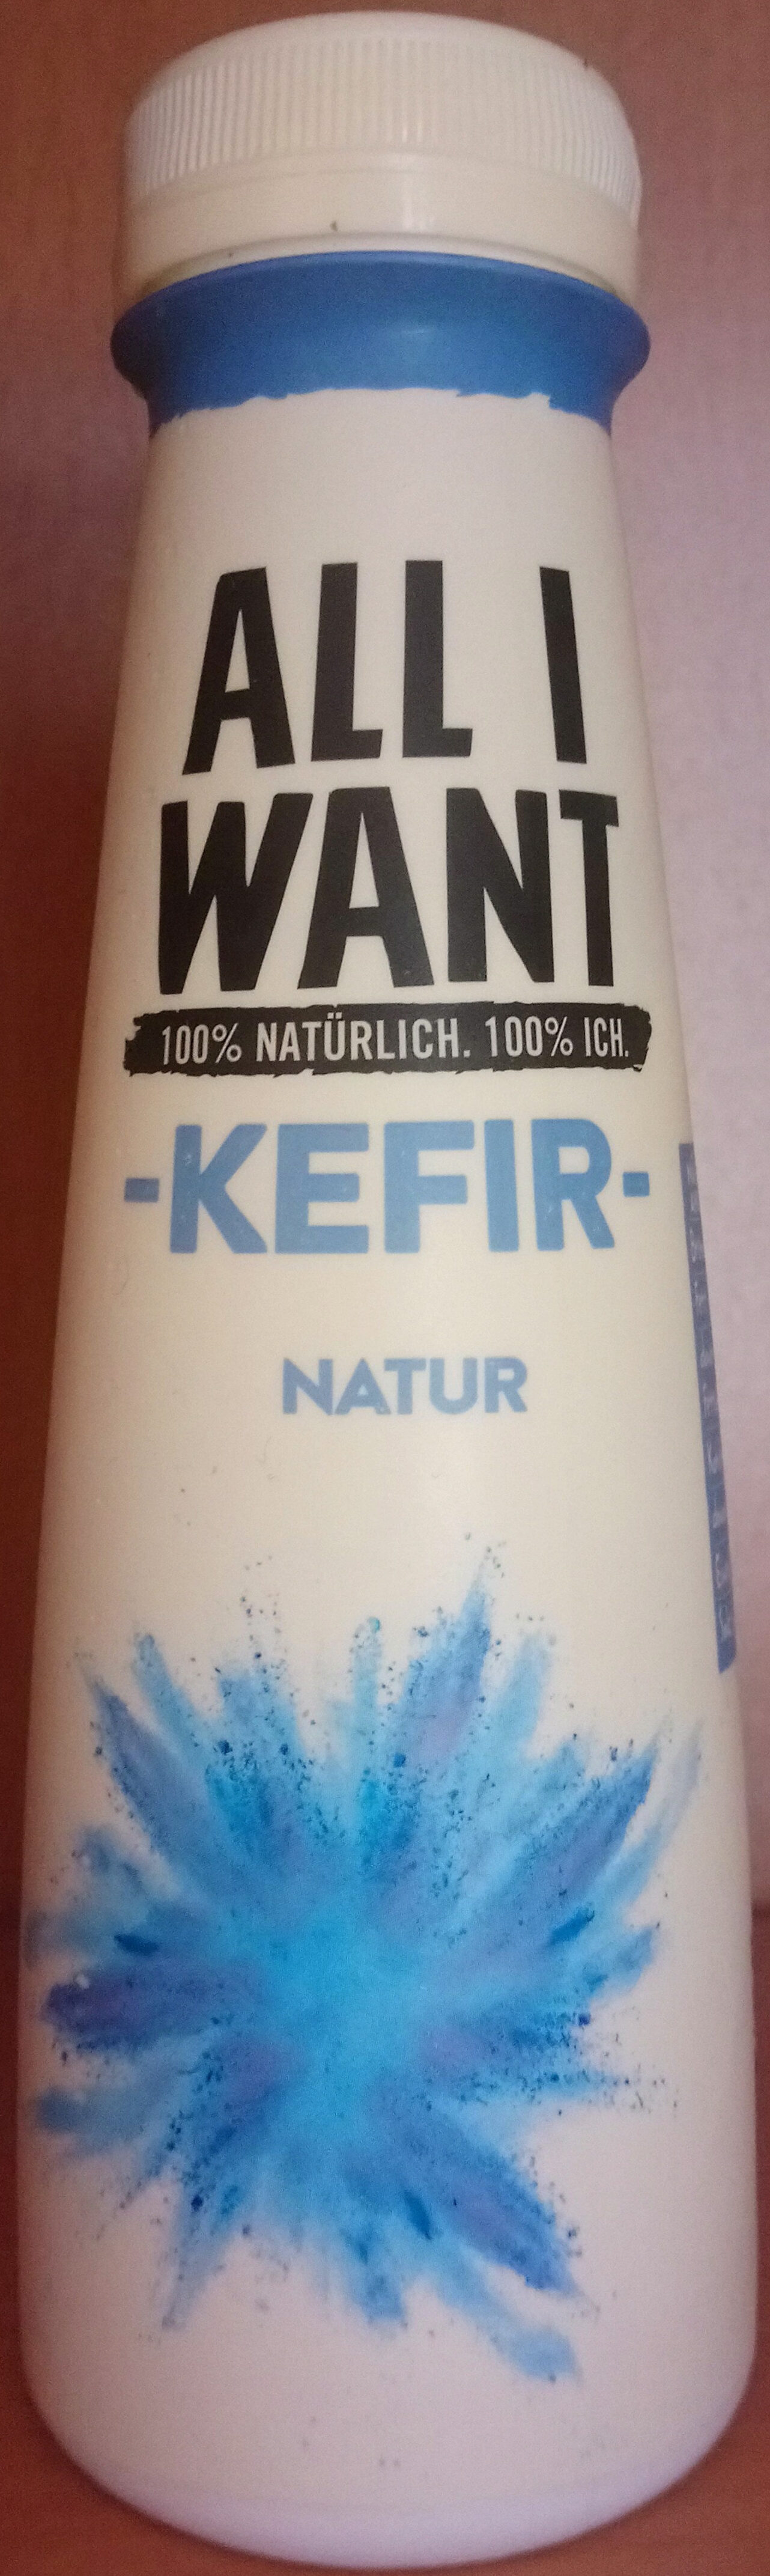 Kefir Natur - Produkt